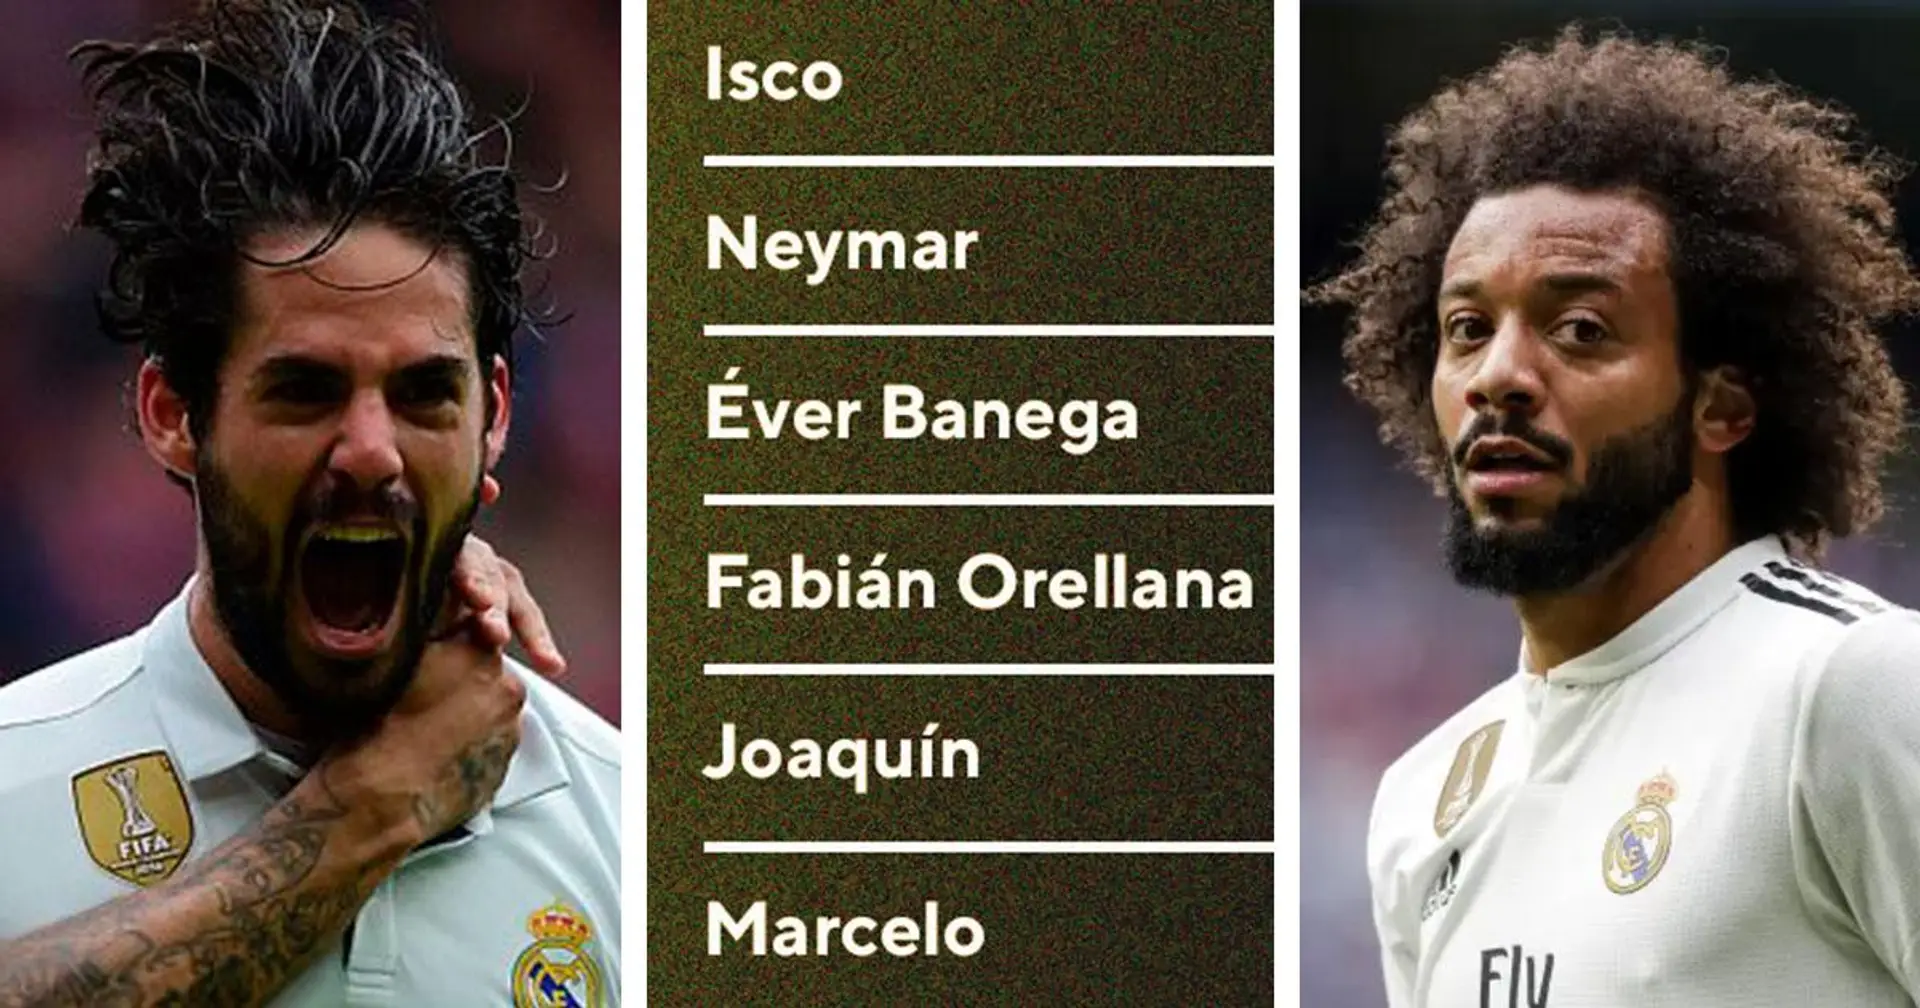 Isco sur la liste des 3 meilleurs joueurs de la Liga avec le plus de dribbles effectués depuis 2010